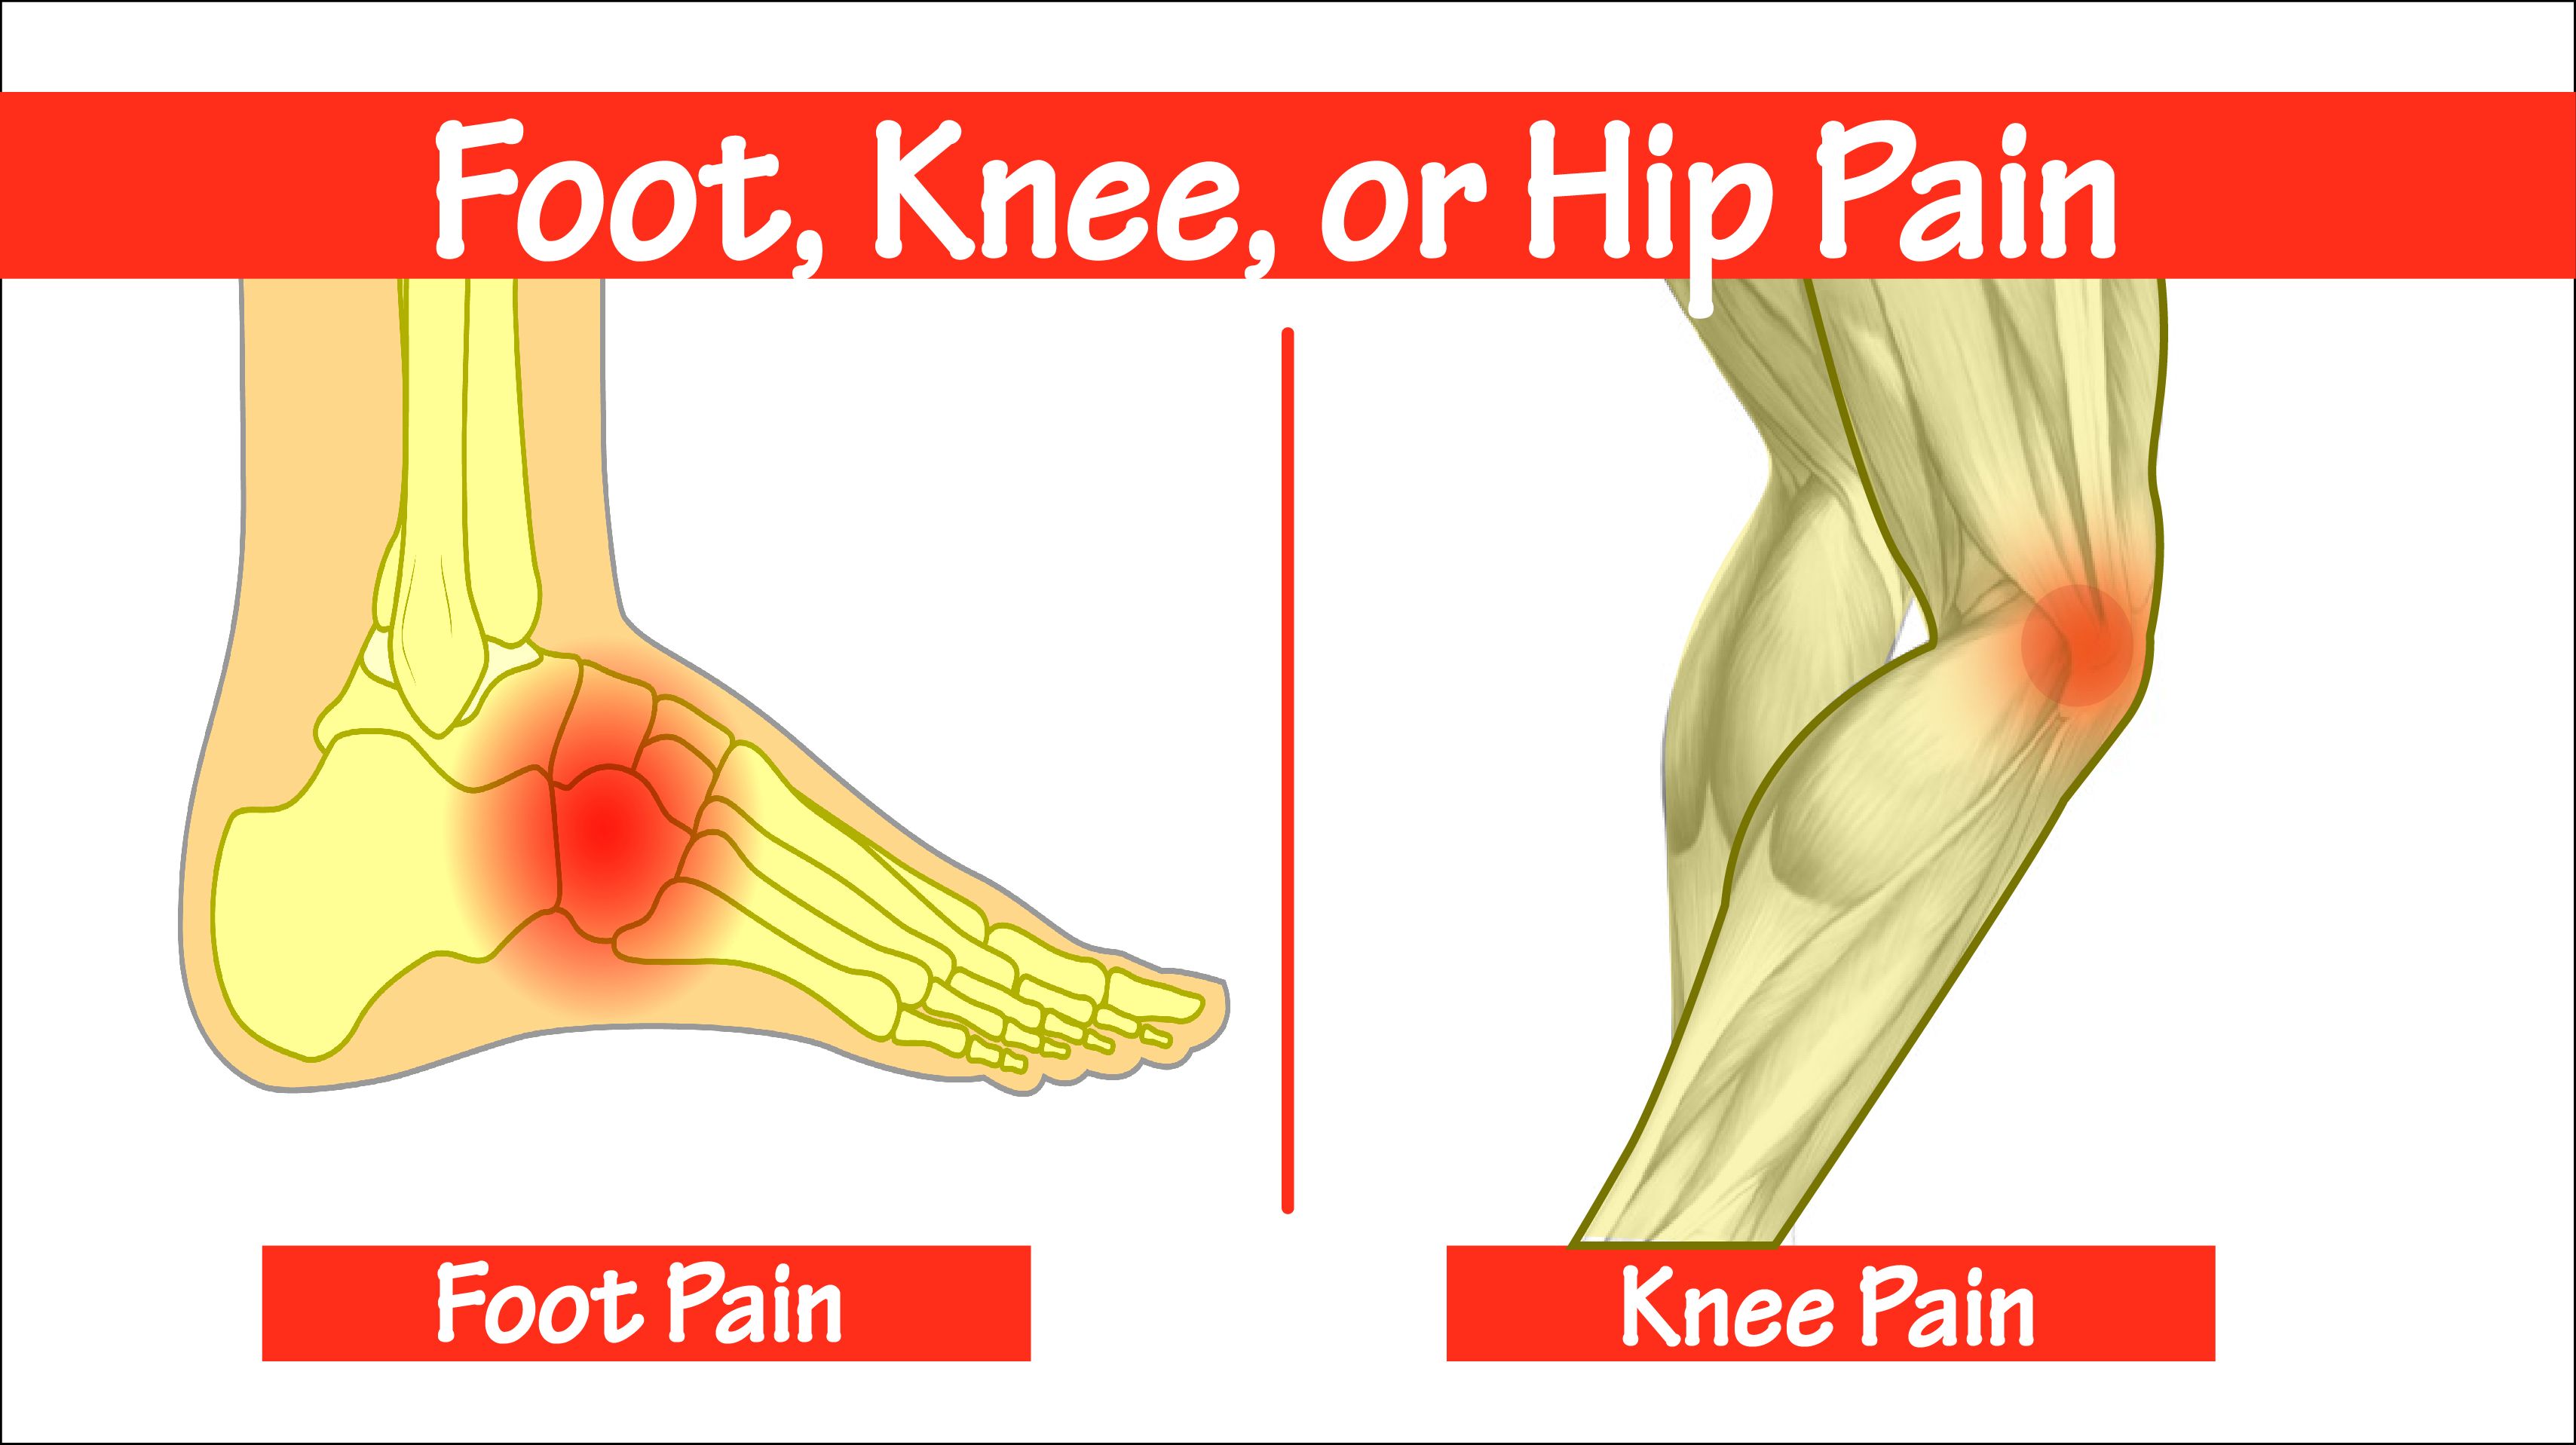 pain in knee and heel of foot